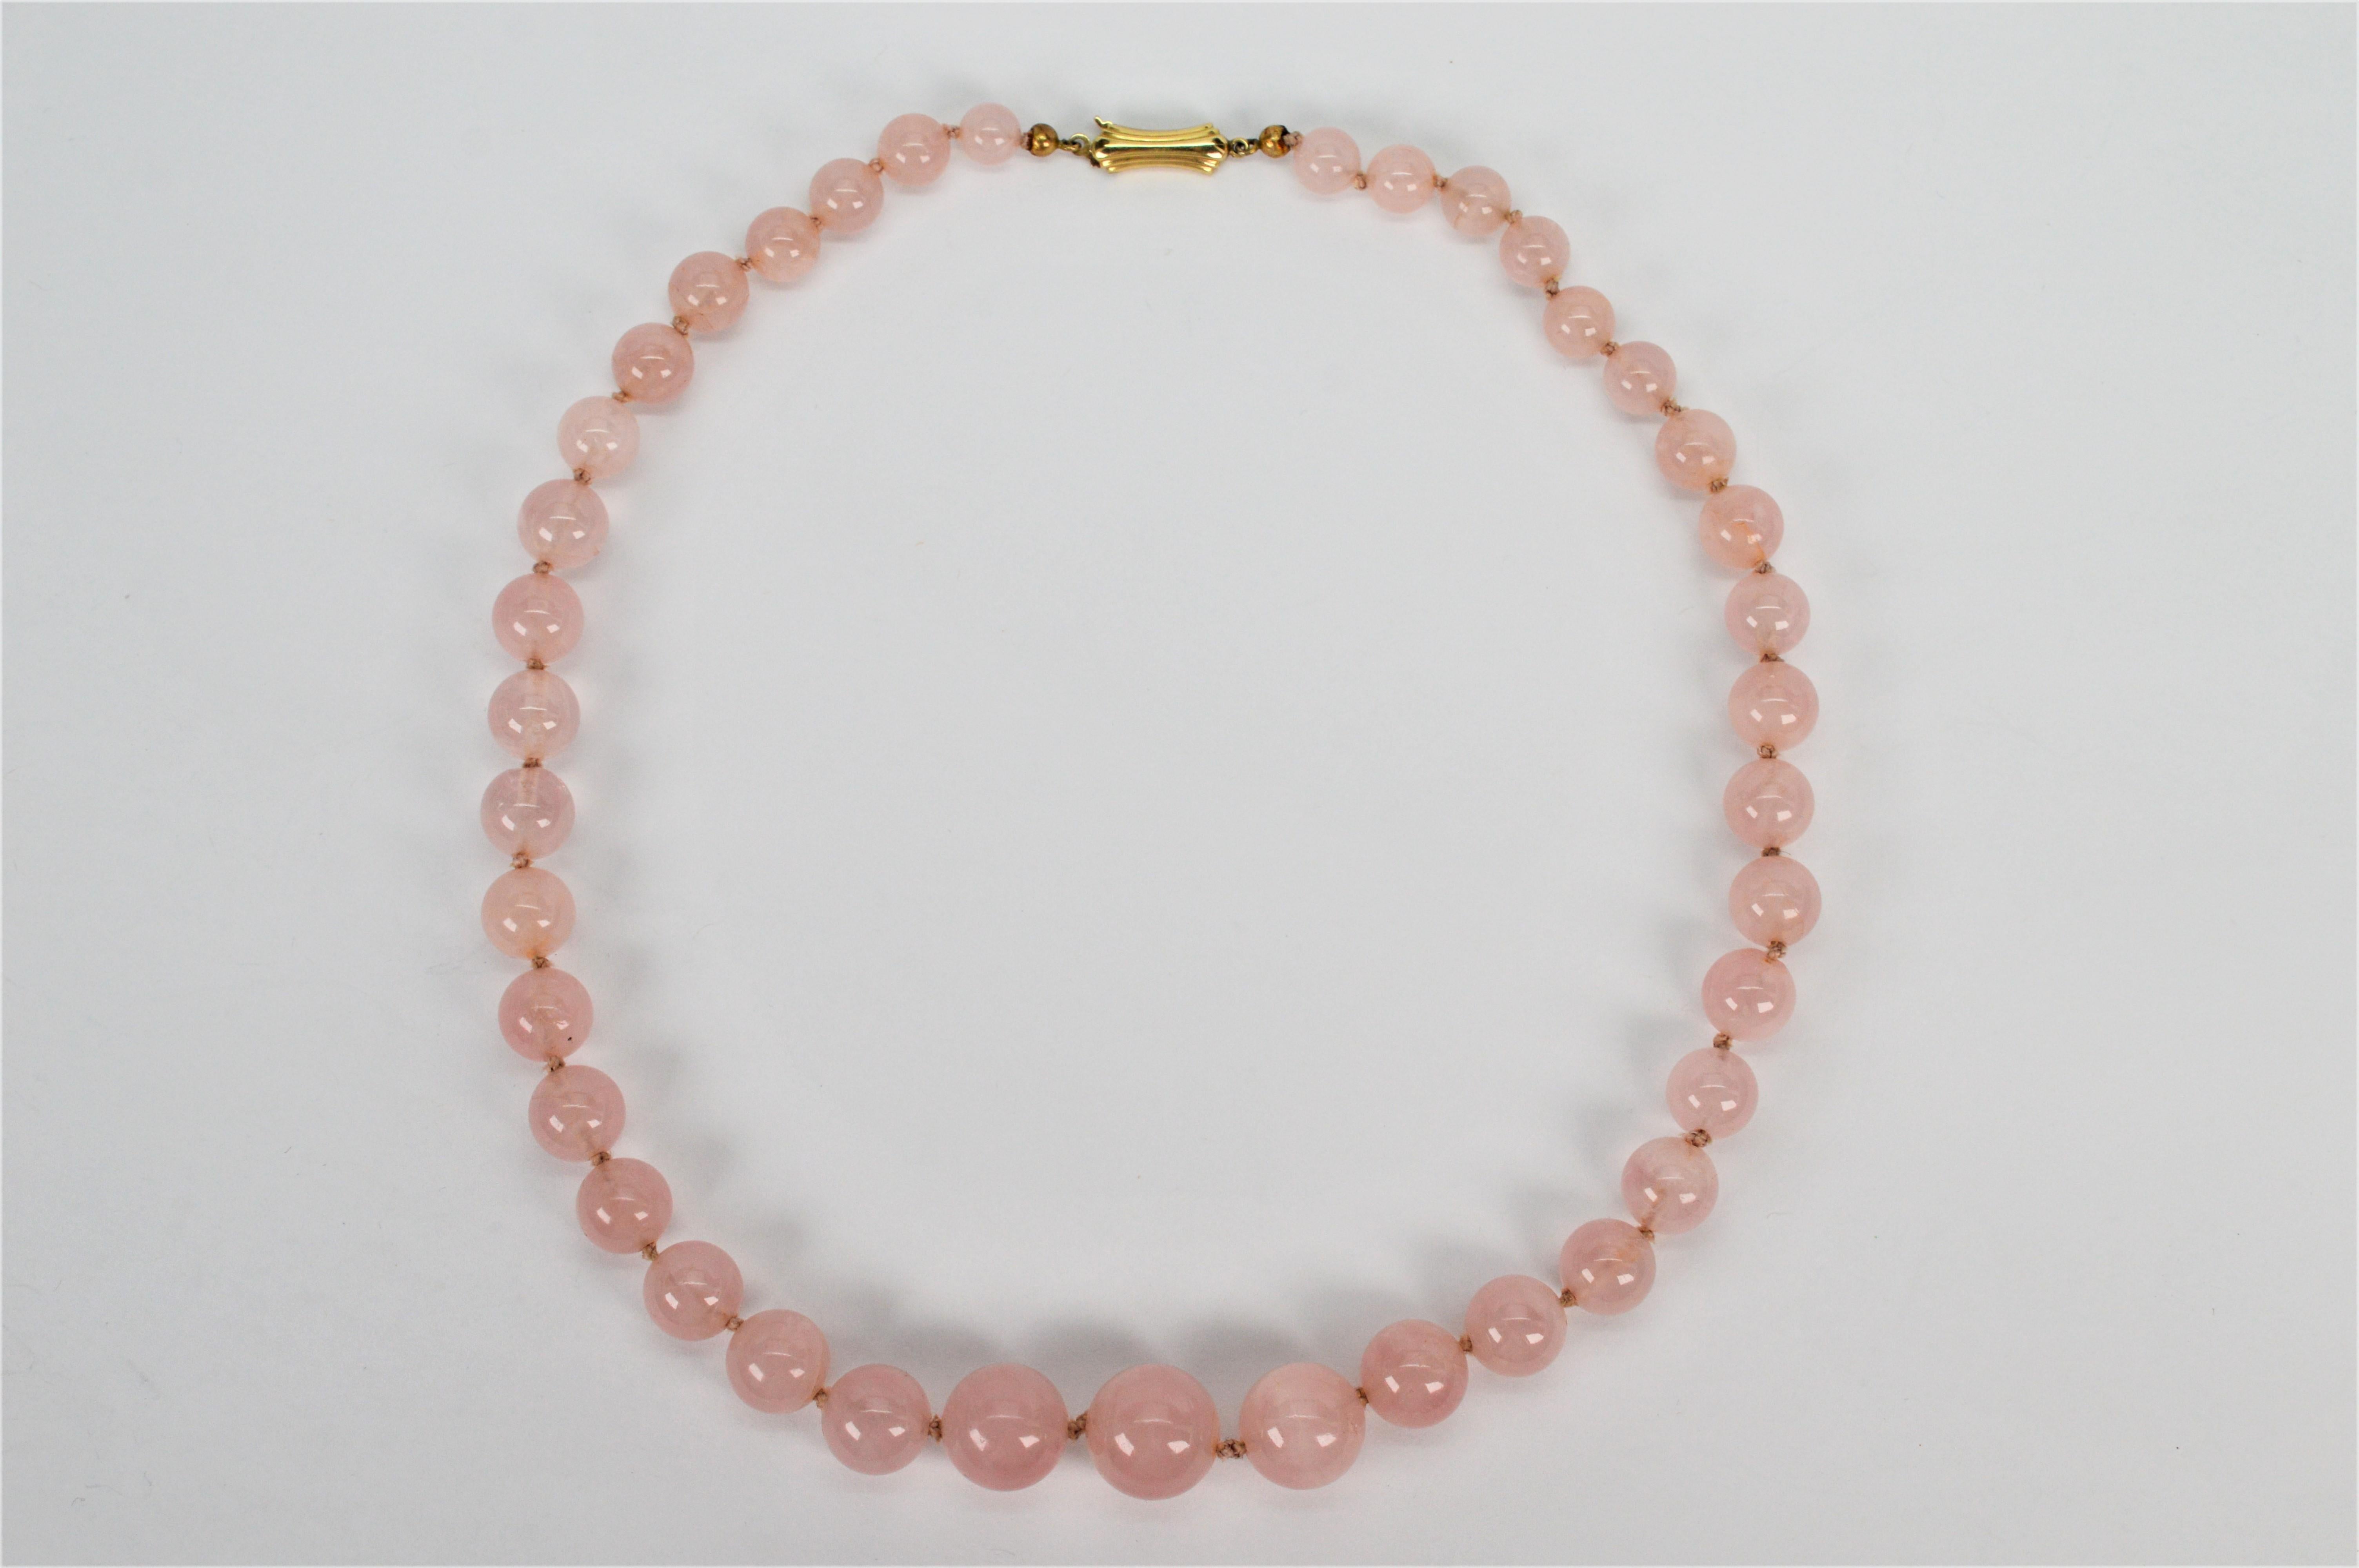 Abgestufte runde Perlen aus naturfarbenem Rosenquarz bilden diese schöne Vintage-Perlenkette. Neununddreißig runde, zartrosa Steine von 6,6 mm bis 13,2 mm werden von Hand auf den originalen Seidenstrang geknüpft, um seine Länge von 16 Zoll zu